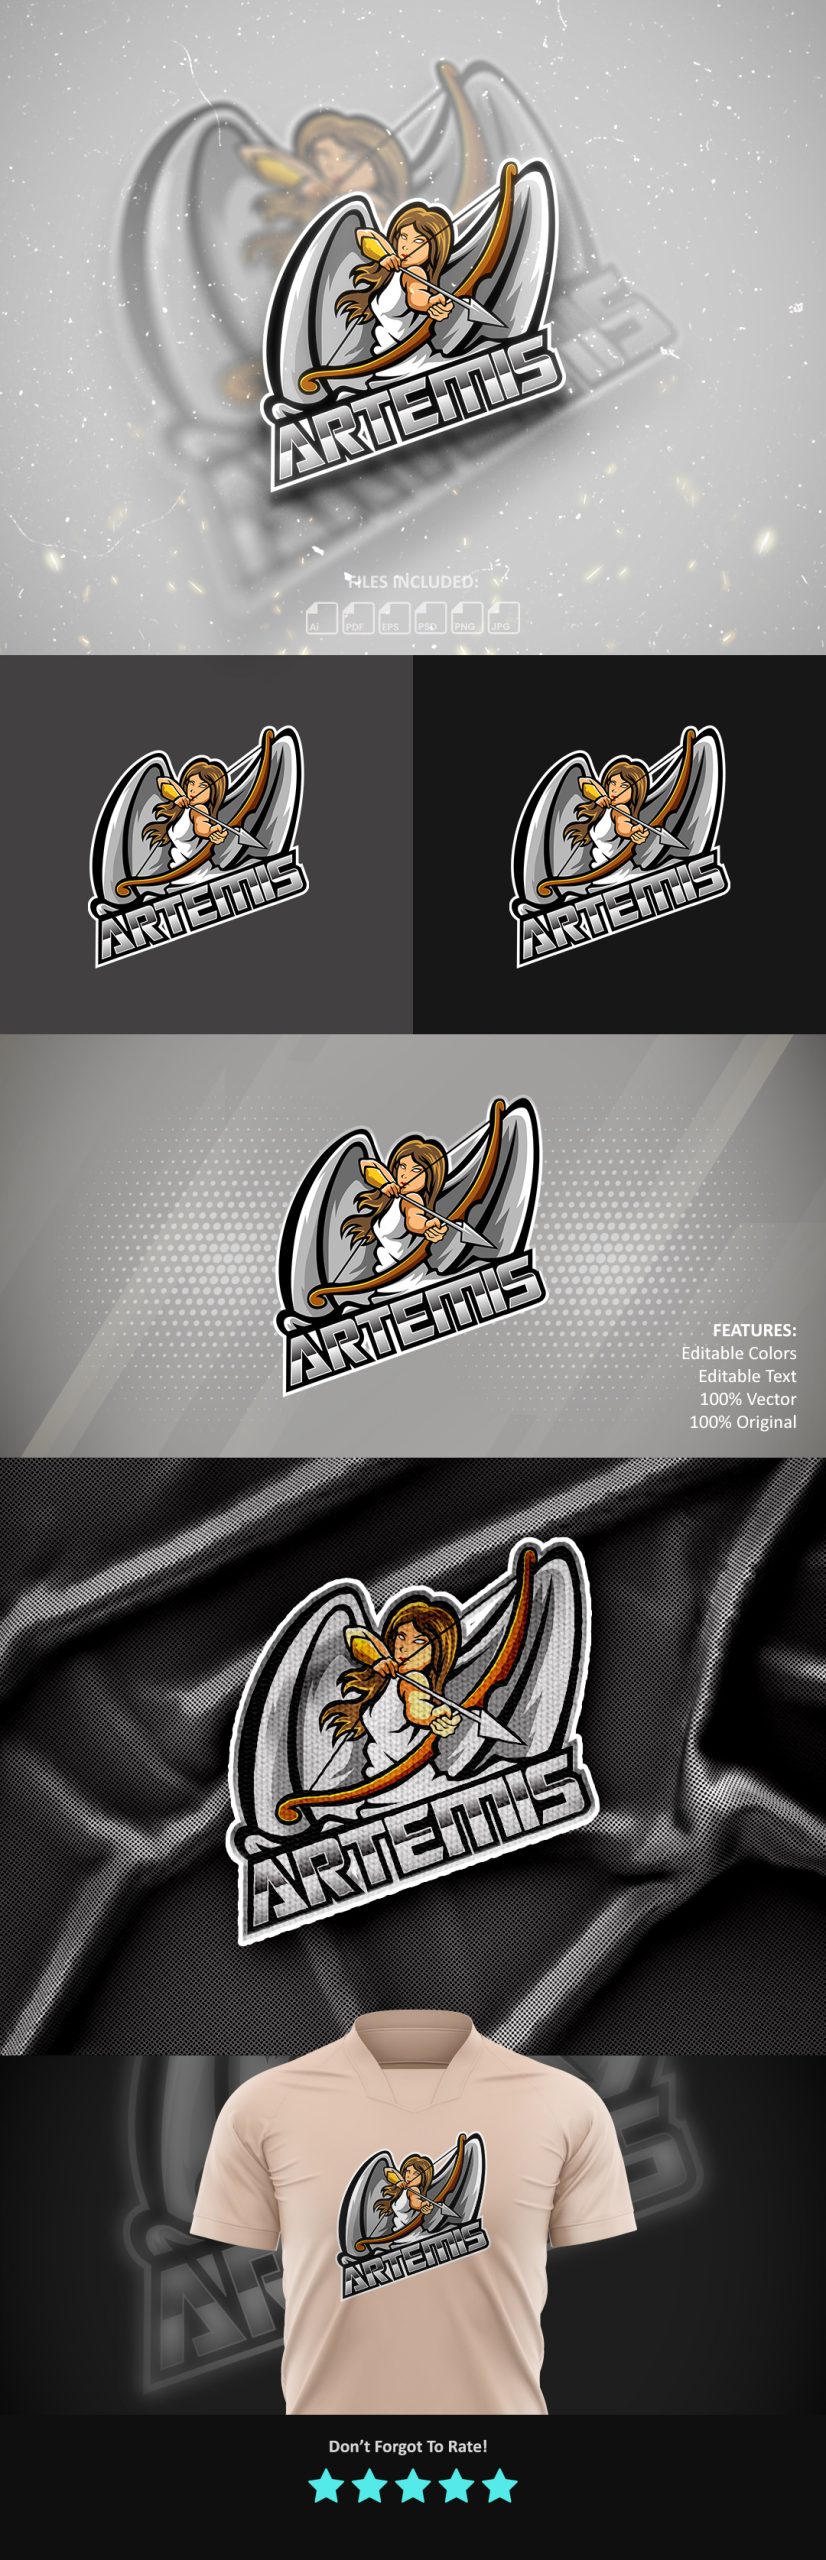 Artemis Gaming Logo Template, Mascot, Esport